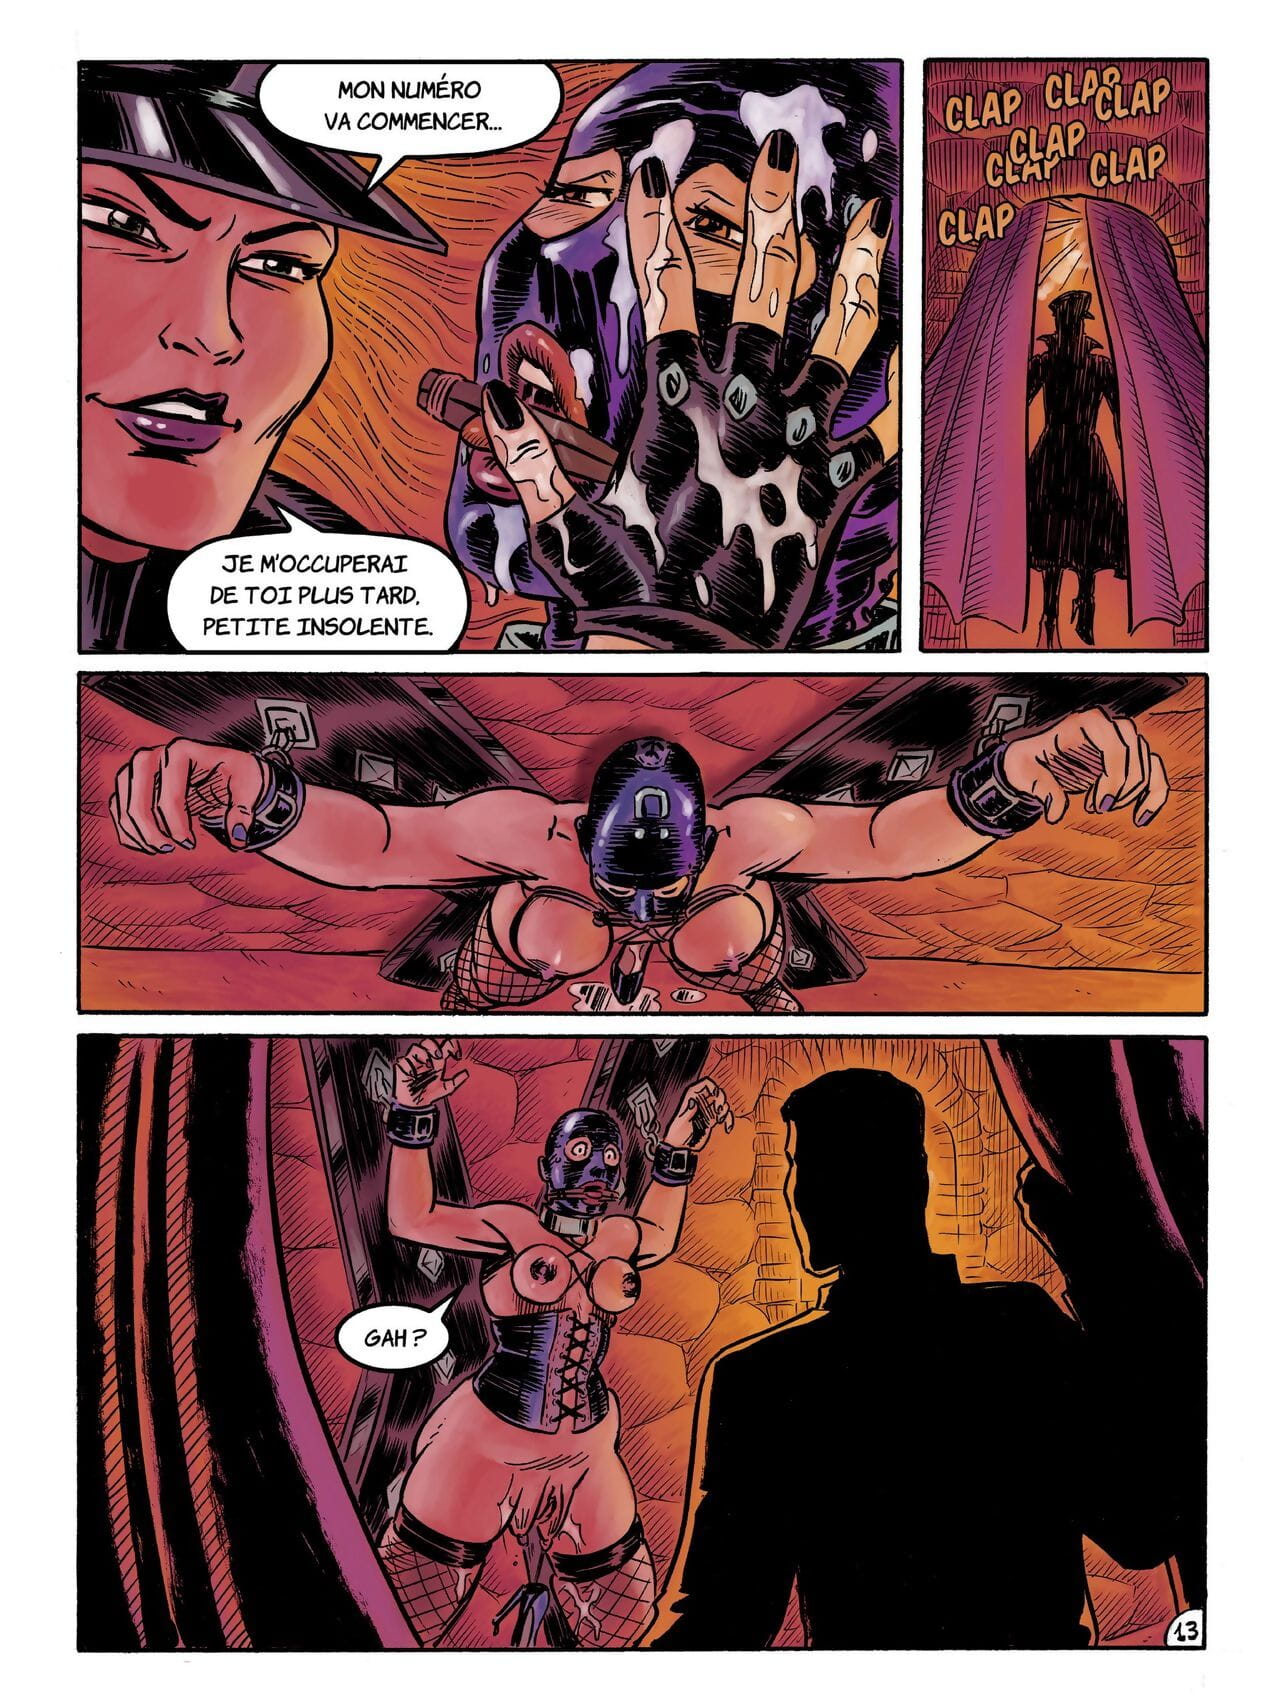 Kinky Slave #3 page 1